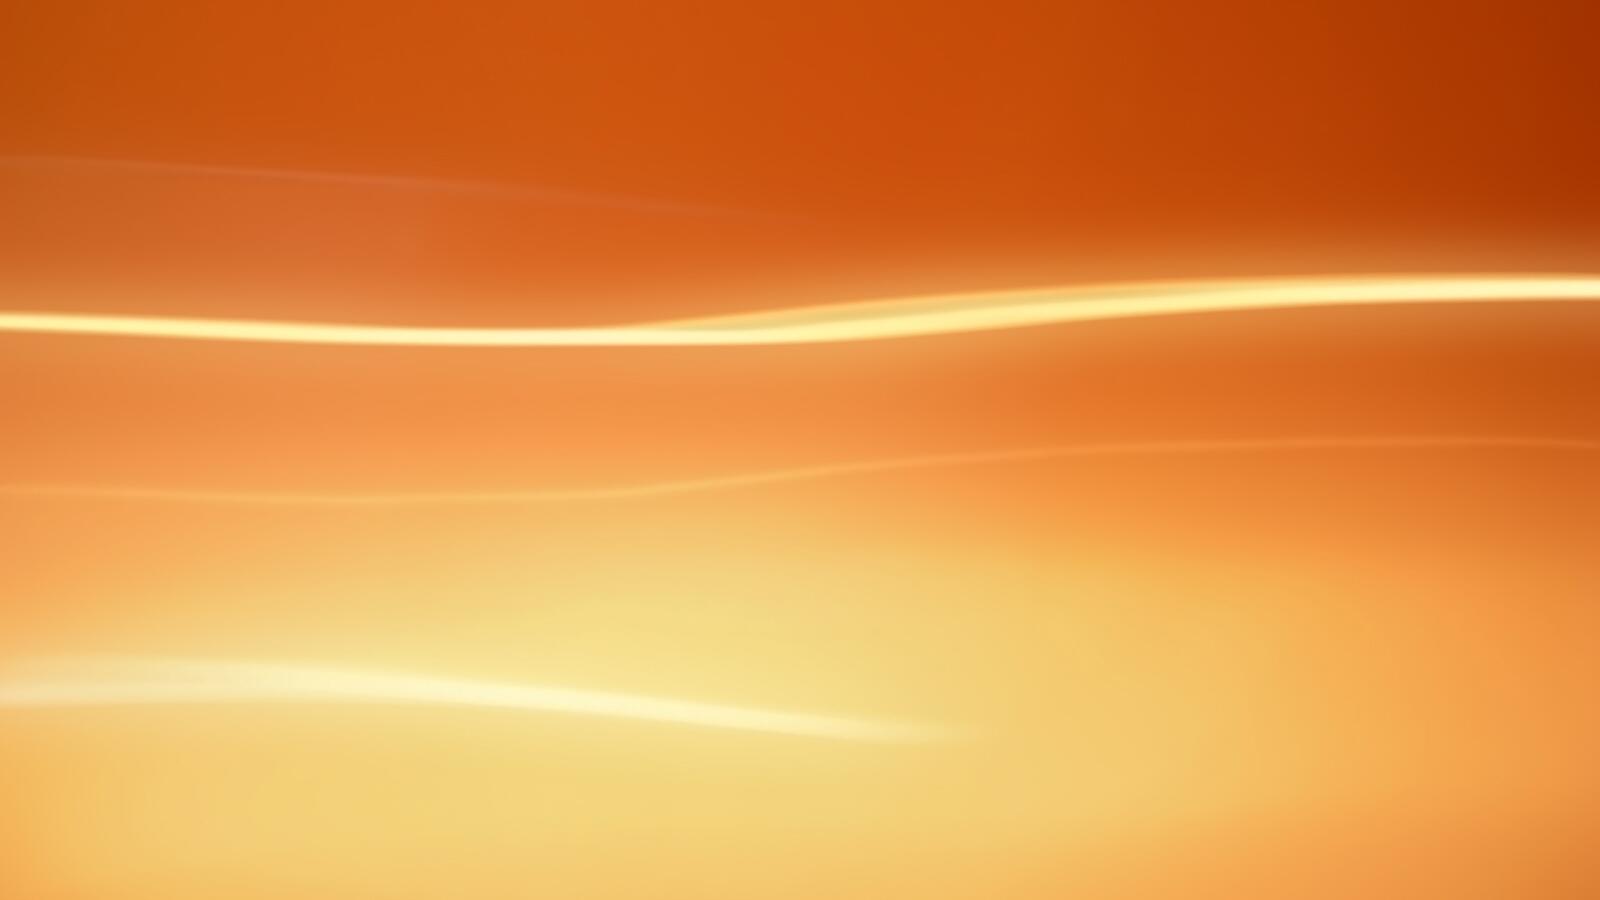 Wallpapers yellow orange lines on the desktop